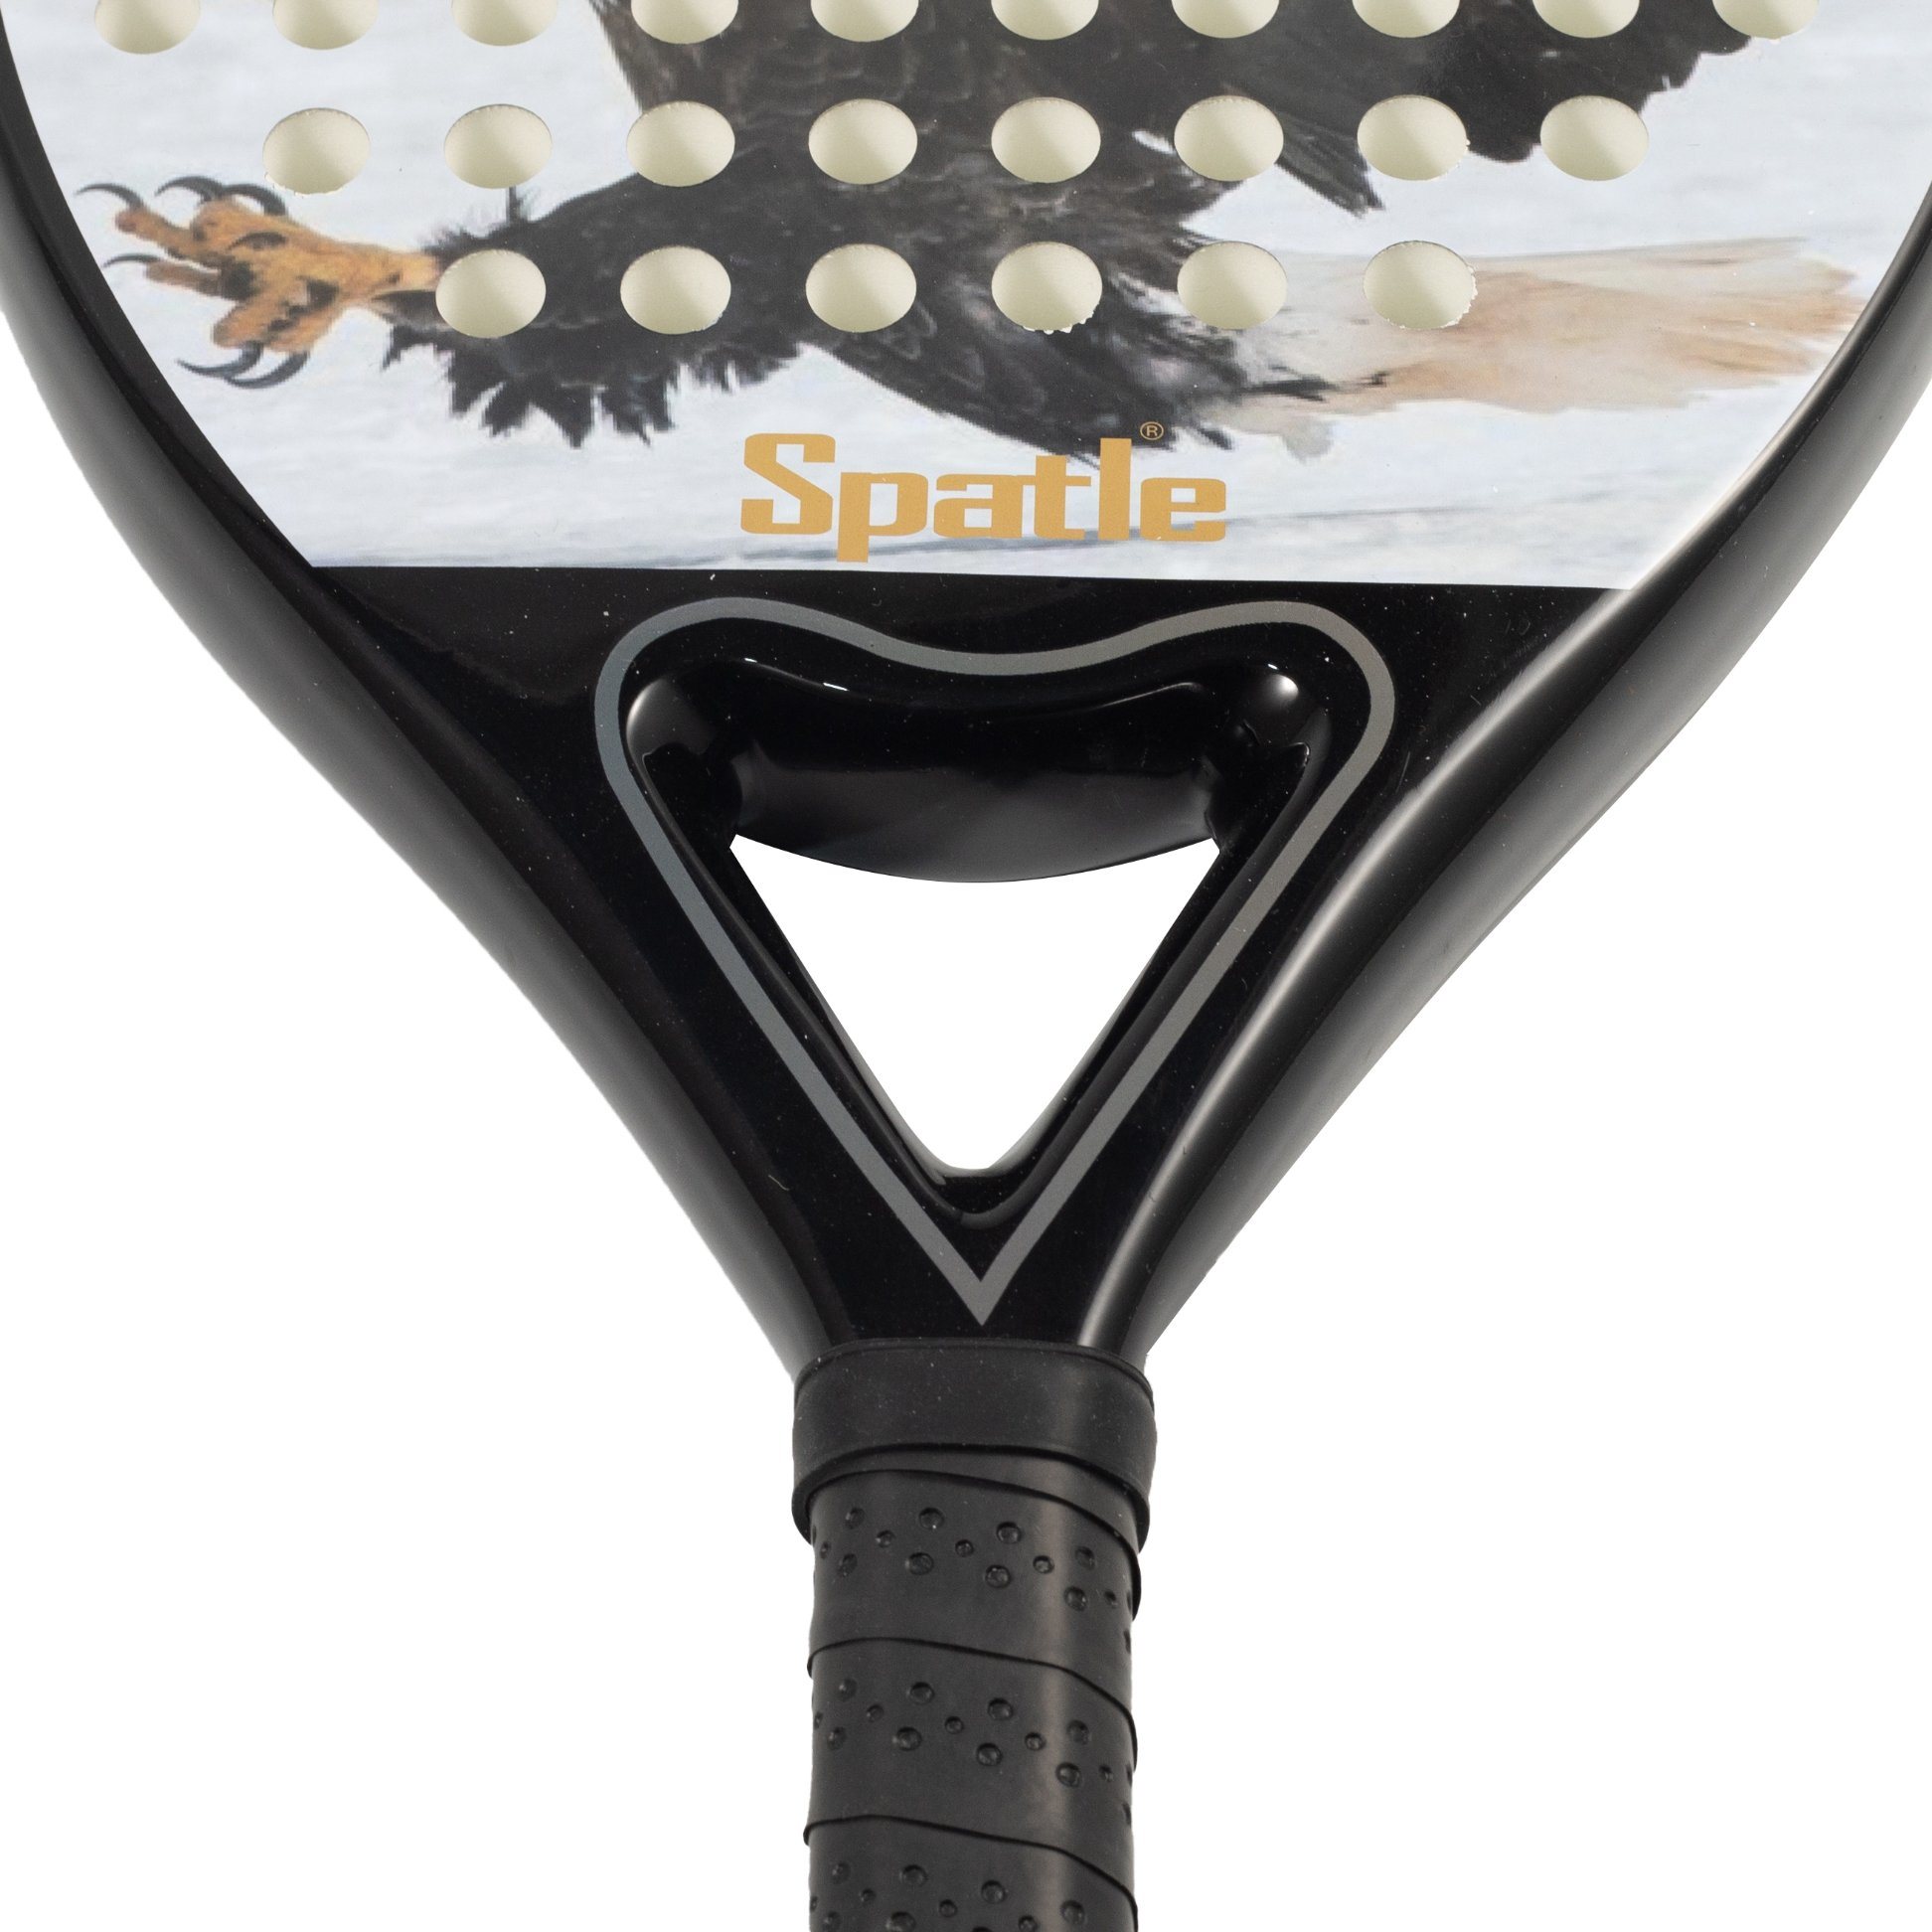 Farblich angepasste Carbon-Paddelschläger-Tennisschläger